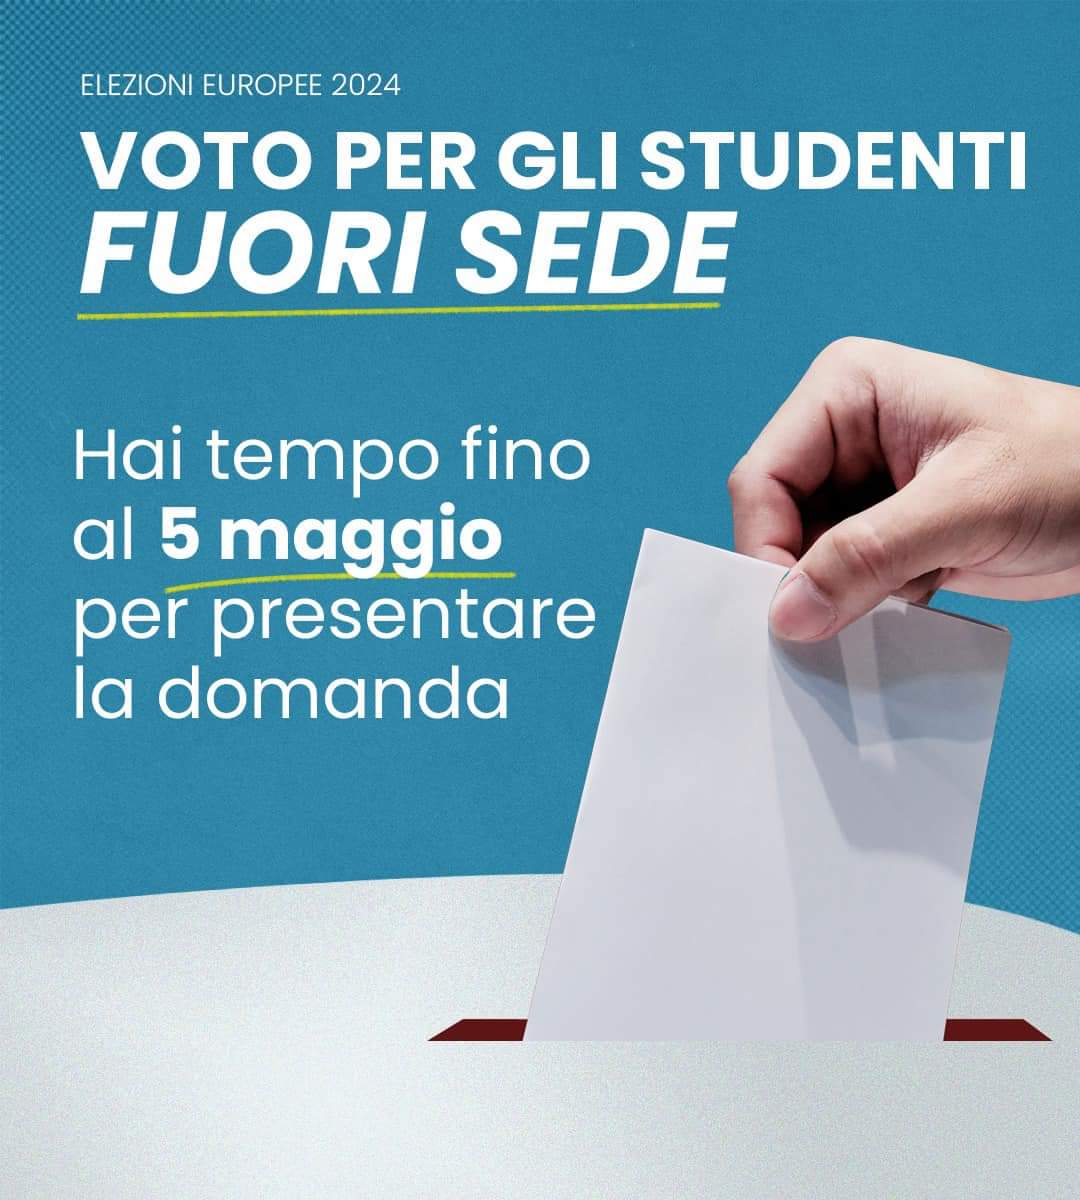 Grazie ad una storica proposta di @FratellidItalia diventata legge, per la prima volta gli studenti fuori sede potranno votare alle elezioni europee senza dover tornare nel loro comune di residenza. Avete tempo fino al 5 maggio per presentare la domanda. Non perdete…